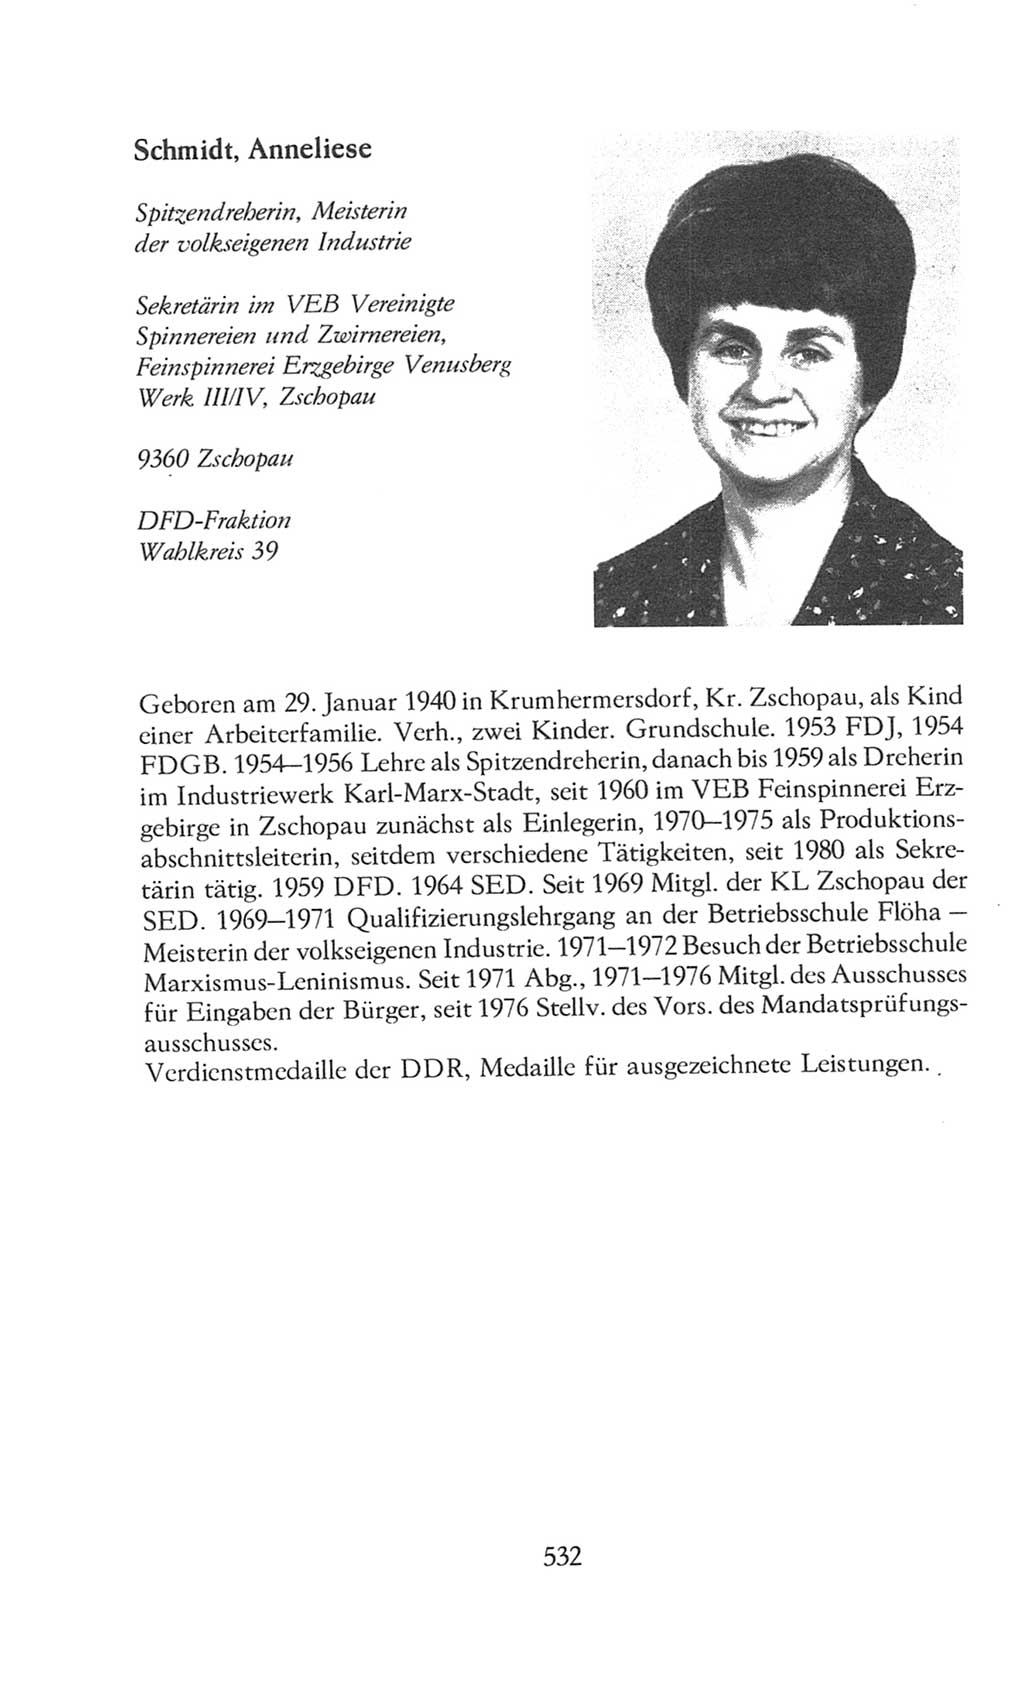 Volkskammer (VK) der Deutschen Demokratischen Republik (DDR), 8. Wahlperiode 1981-1986, Seite 532 (VK. DDR 8. WP. 1981-1986, S. 532)